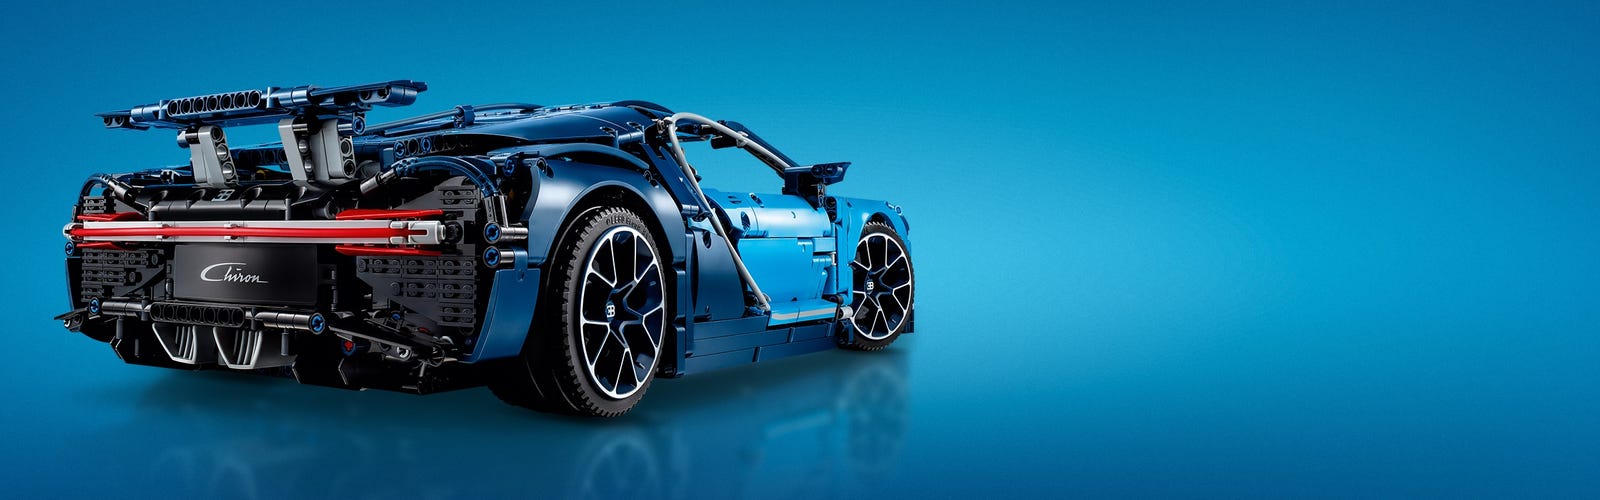 LEGO 42083 Bugatti Chiron - LEGO Technic - BricksDirect Condition New.